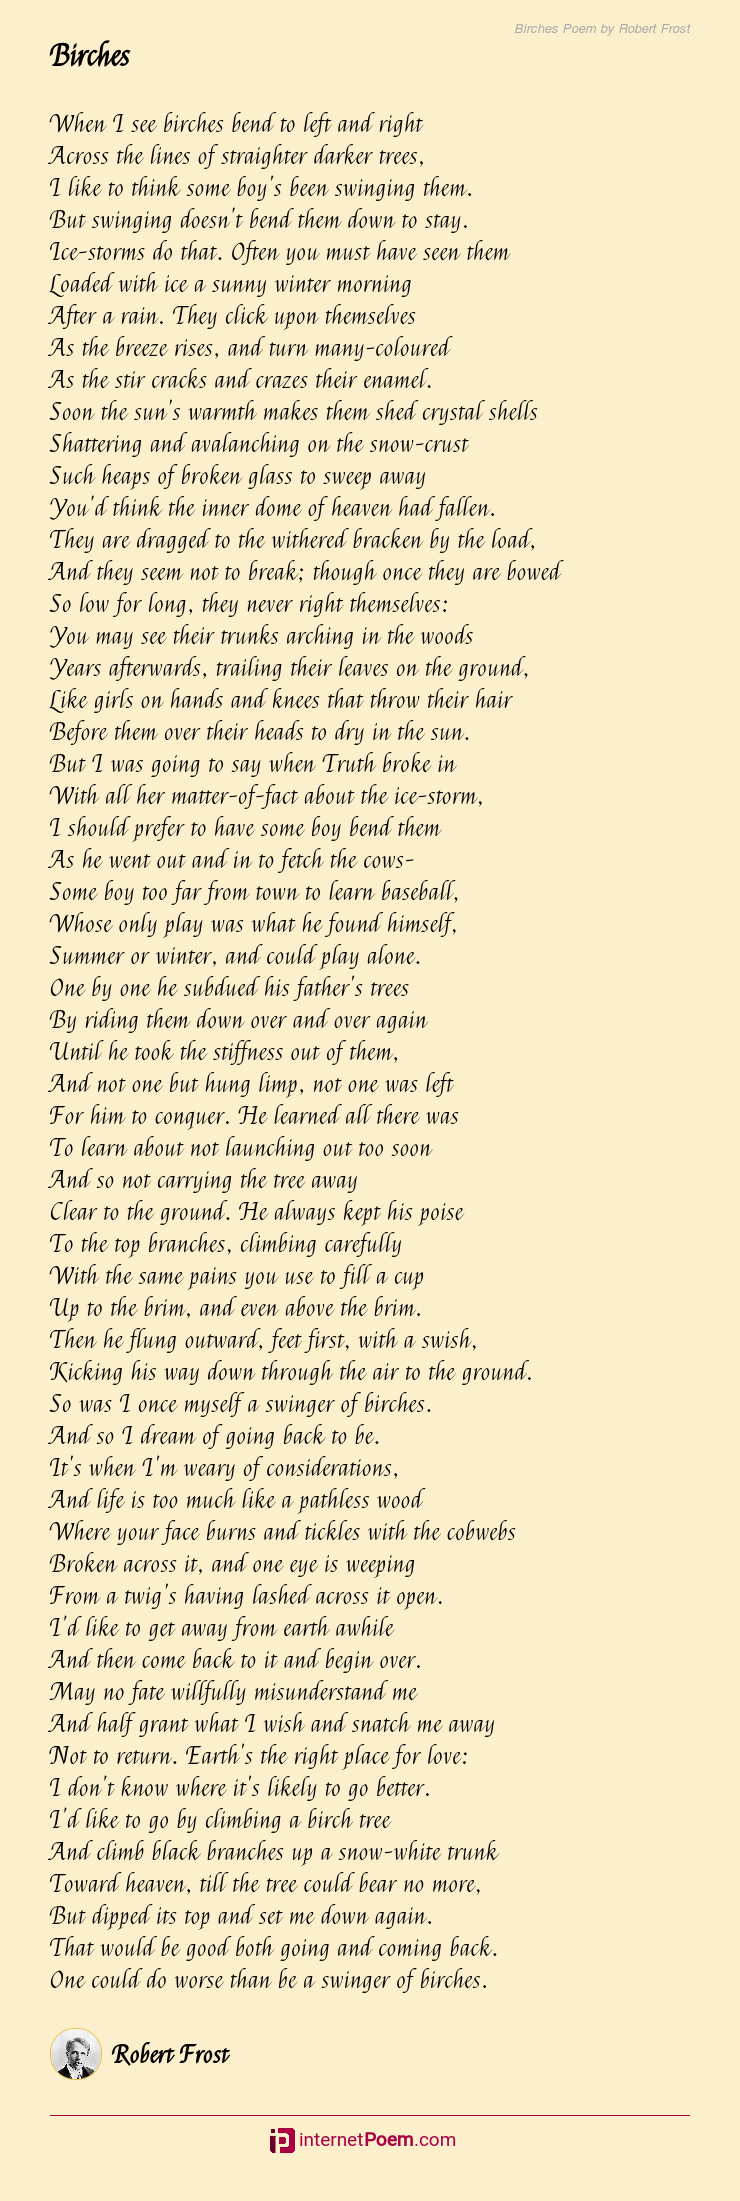 birches poem essay